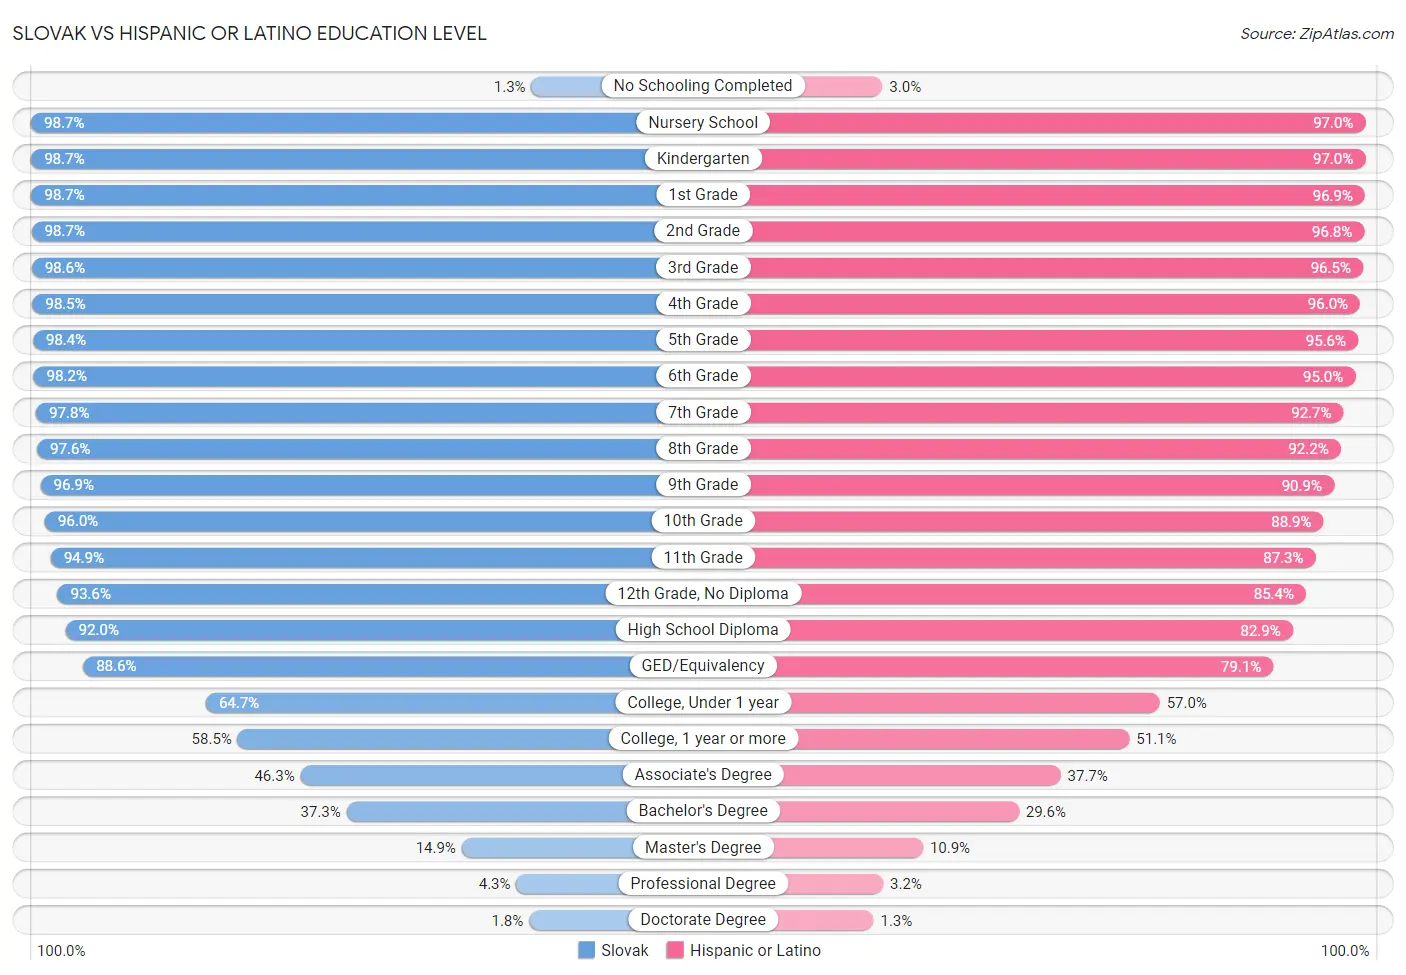 Slovak vs Hispanic or Latino Education Level